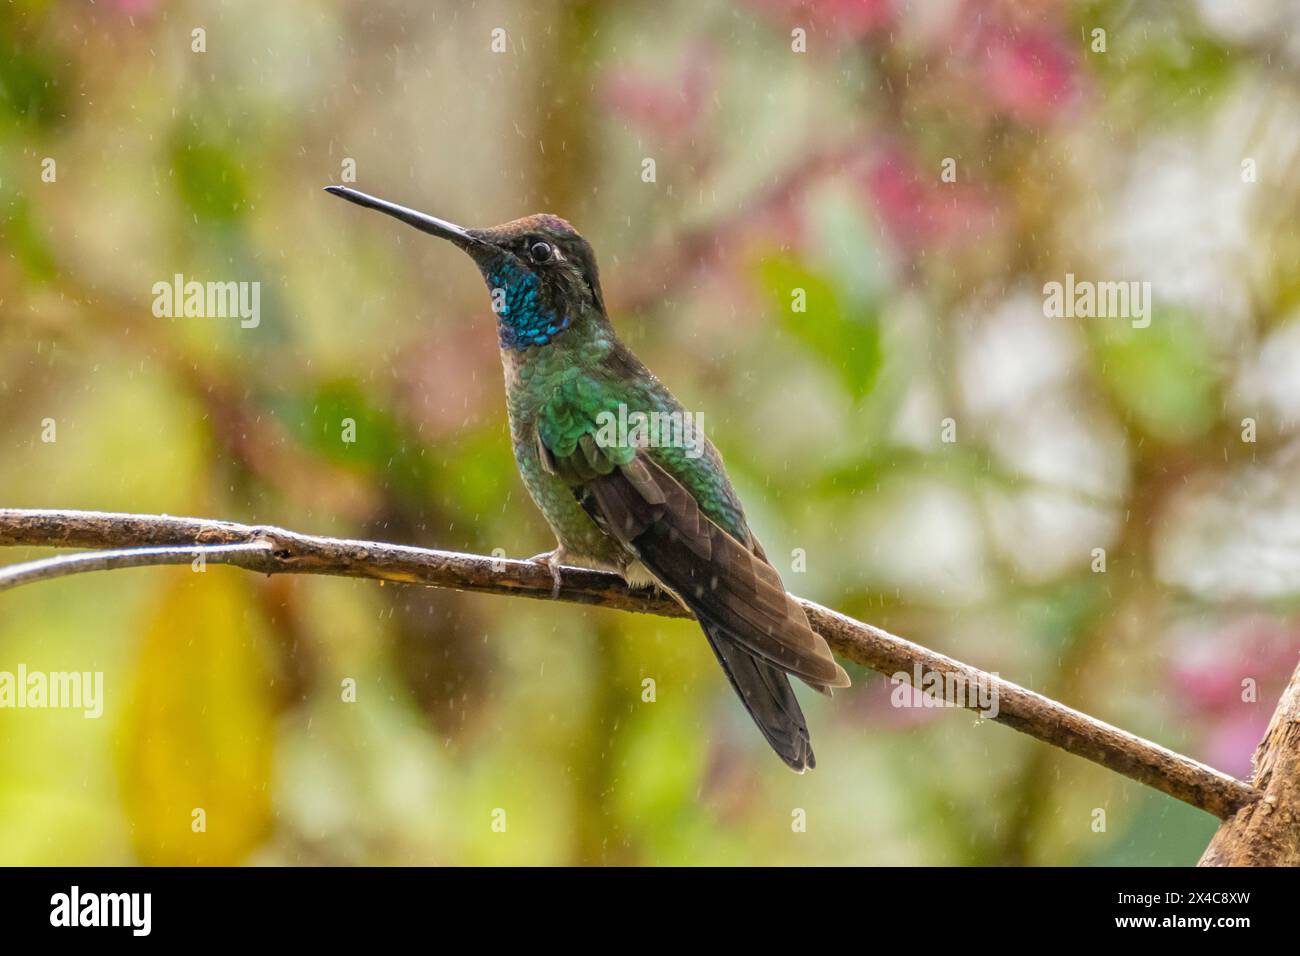 Costa Rica, Cordillera de Talamanca. Talamanca hummingbird in rain. Stock Photo